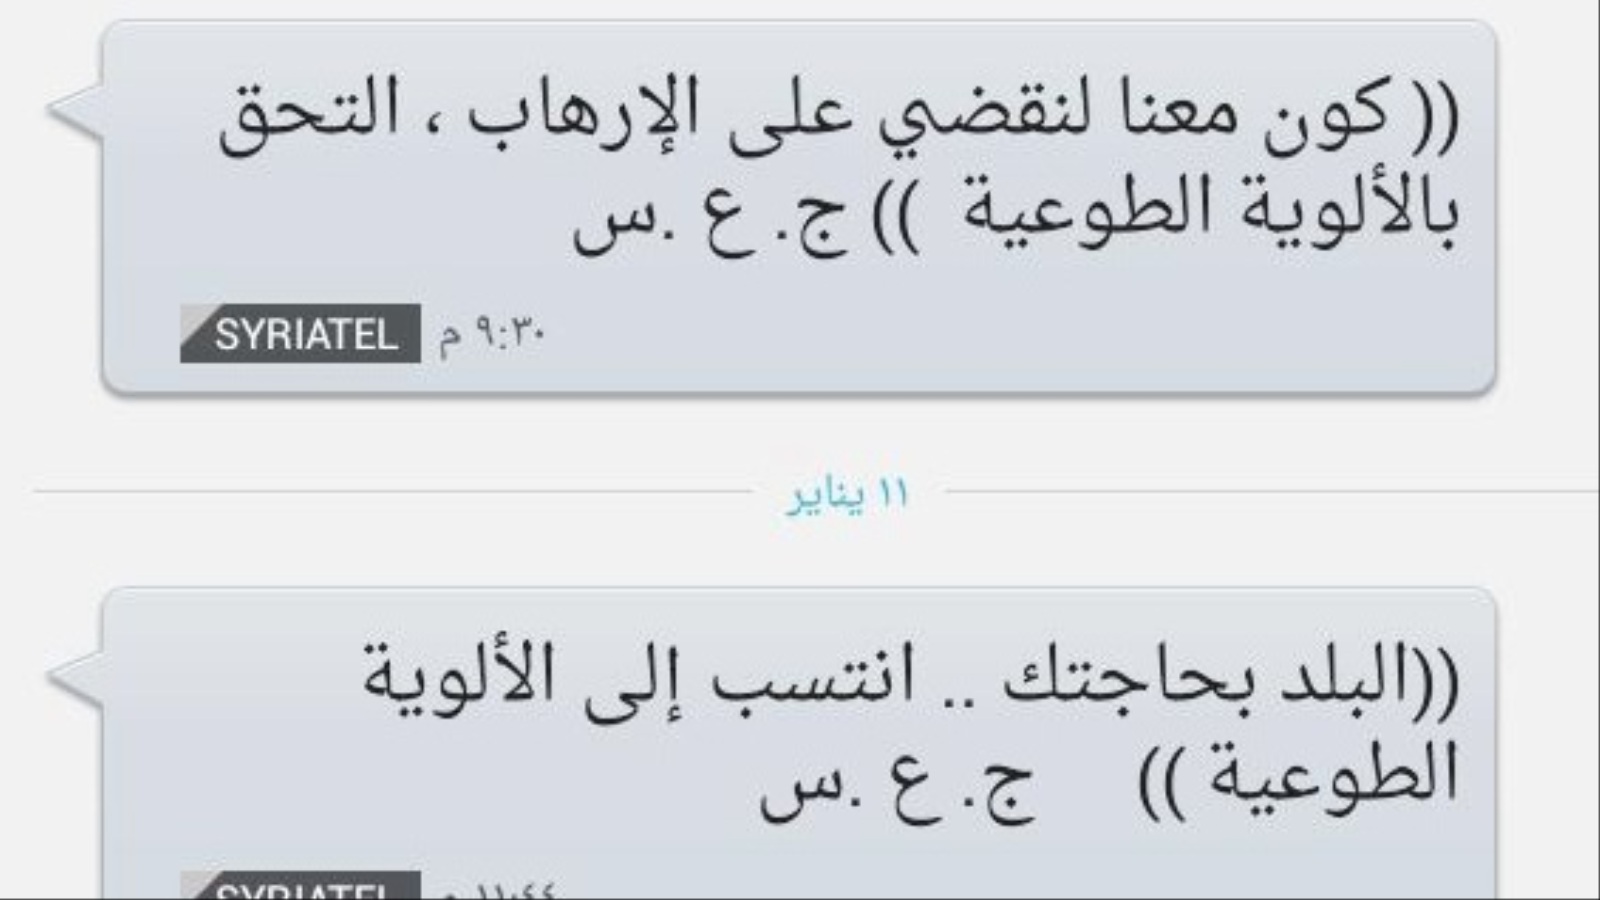 نموذج للرسائل النصية التي يرسلها النظام إلى المواطنين تدعوهم للقتال في صفوفه (الجزيرة)